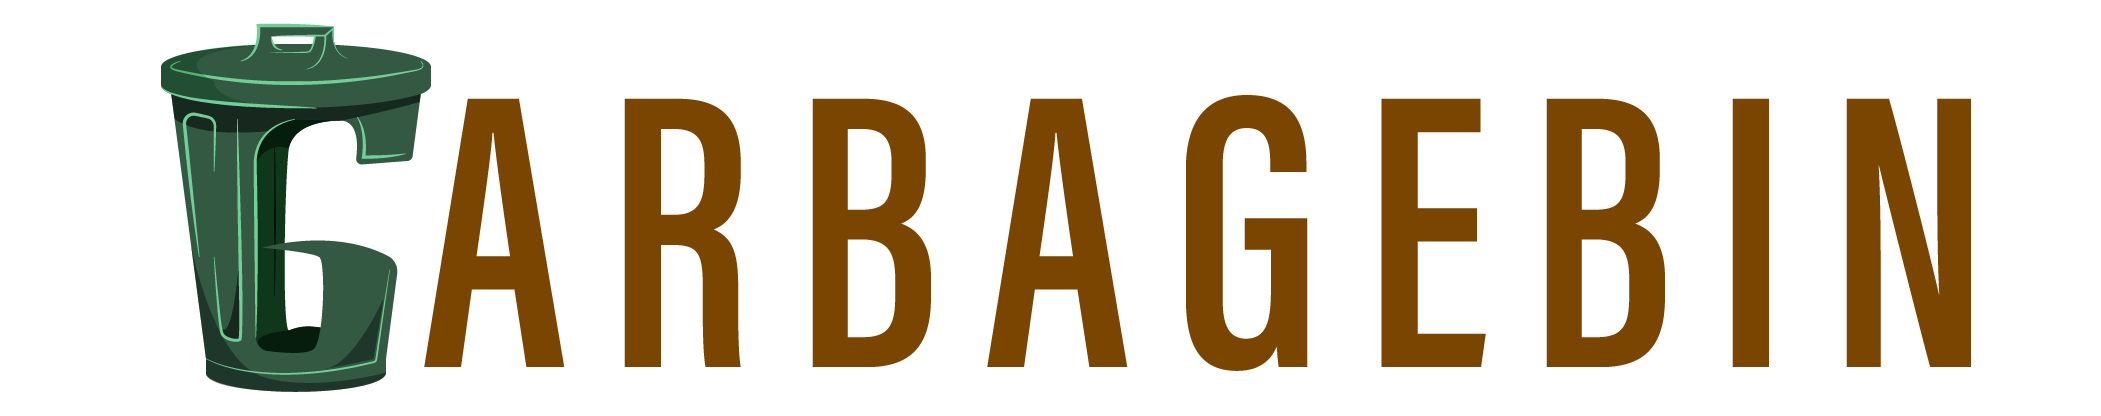 Garbage bin logo